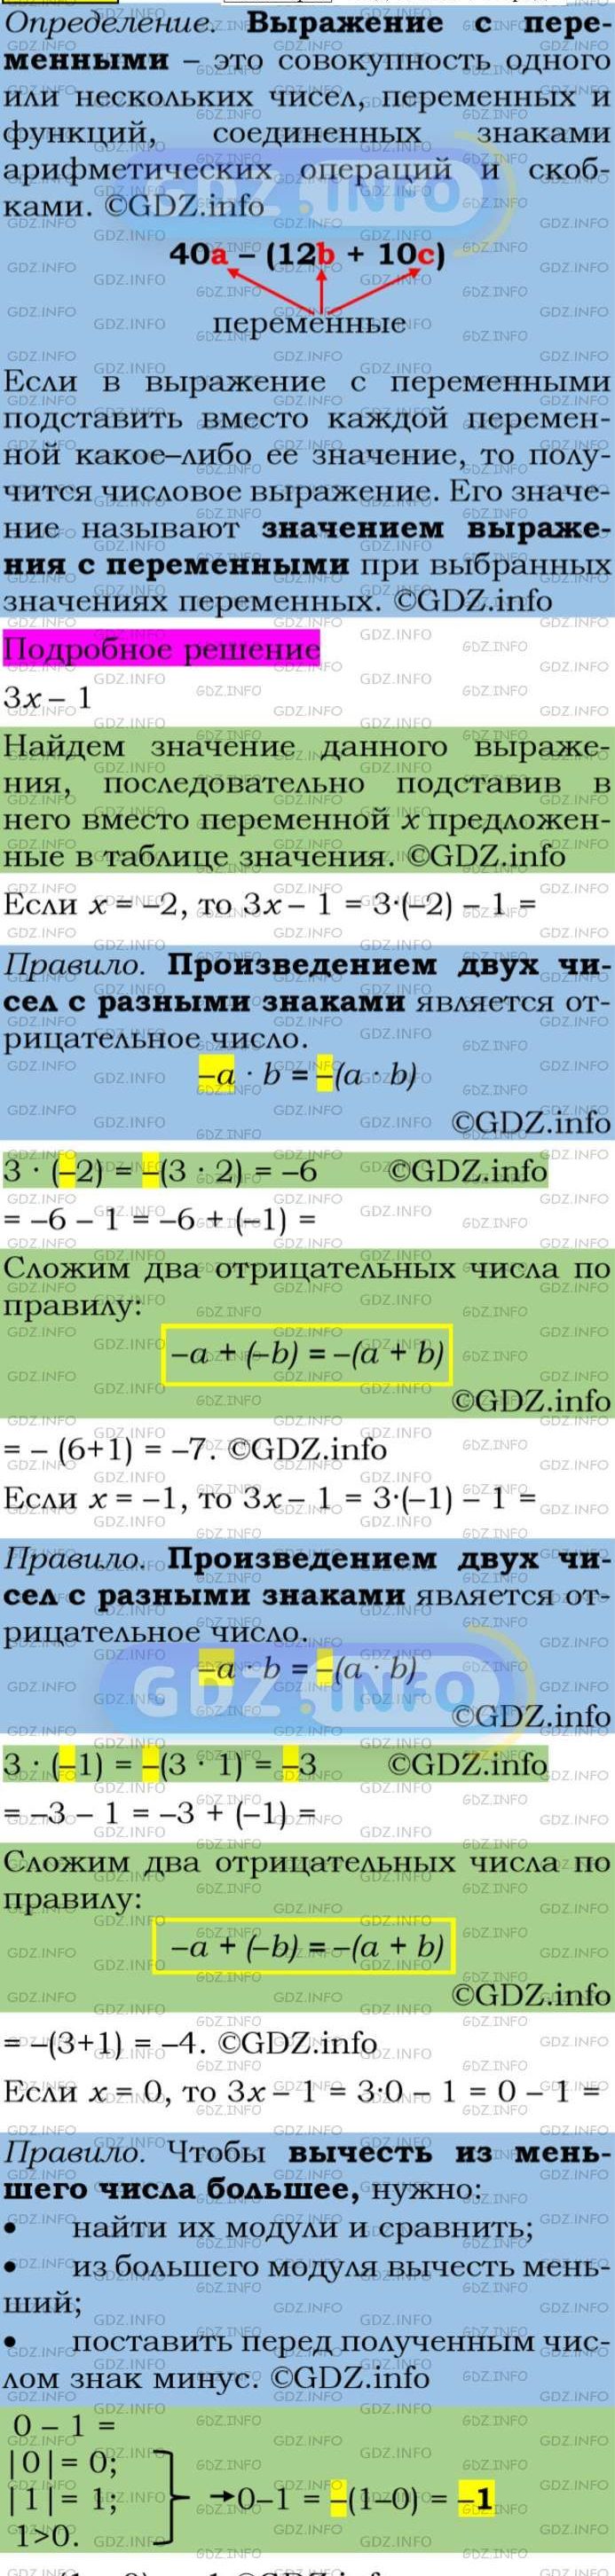 Фото подробного решения: Номер задания №38 из ГДЗ по Алгебре 7 класс: Макарычев Ю.Н.